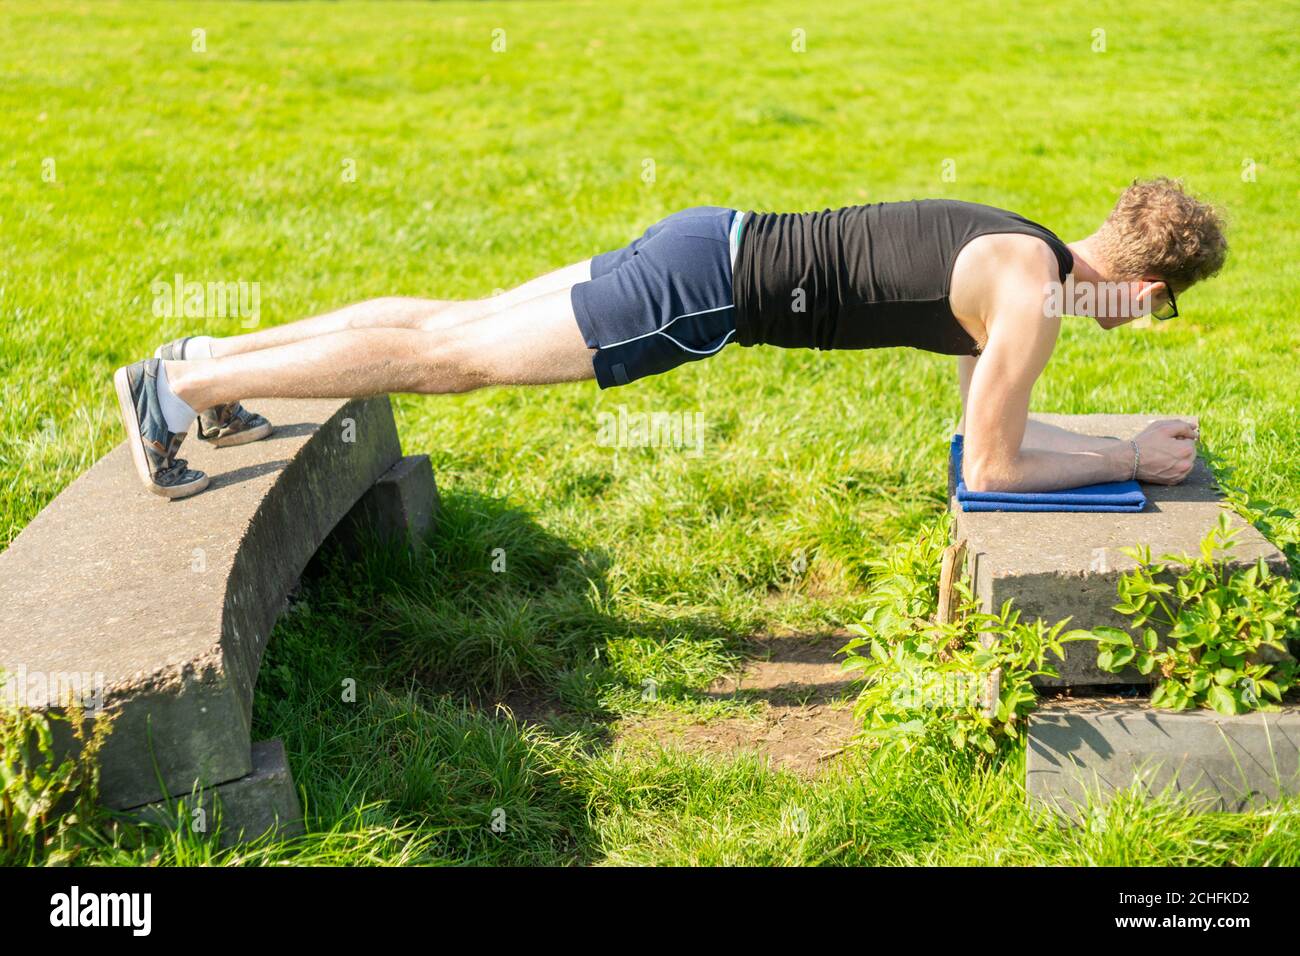 Jeune homme effectuant un exercice de planche dans un environnement extérieur. Renforcer les muscles de base, l'exercice, garder la forme, la santé Banque D'Images